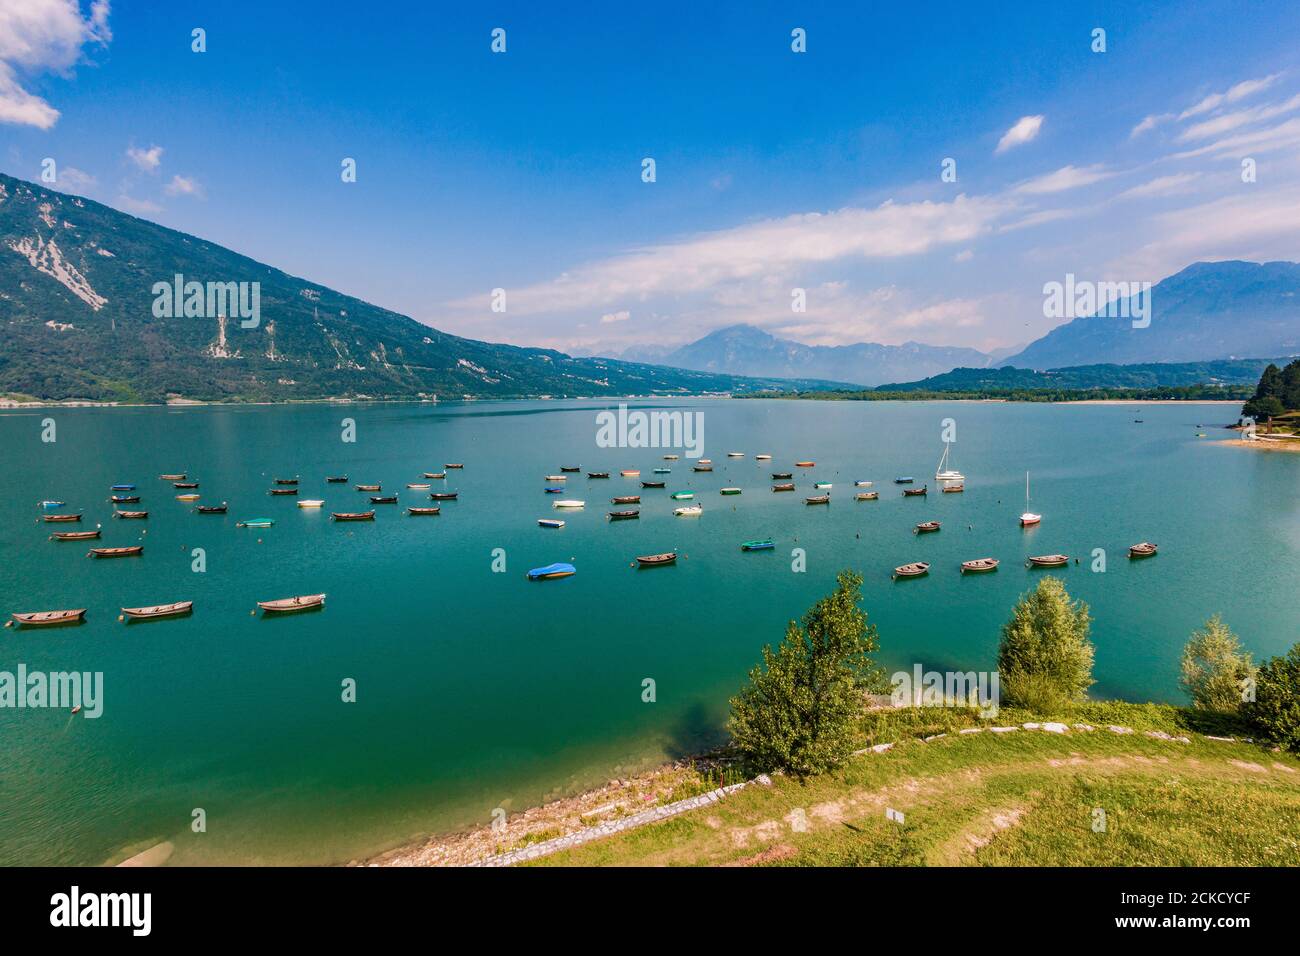 Lago di santa croce immagini e fotografie stock ad alta risoluzione - Alamy